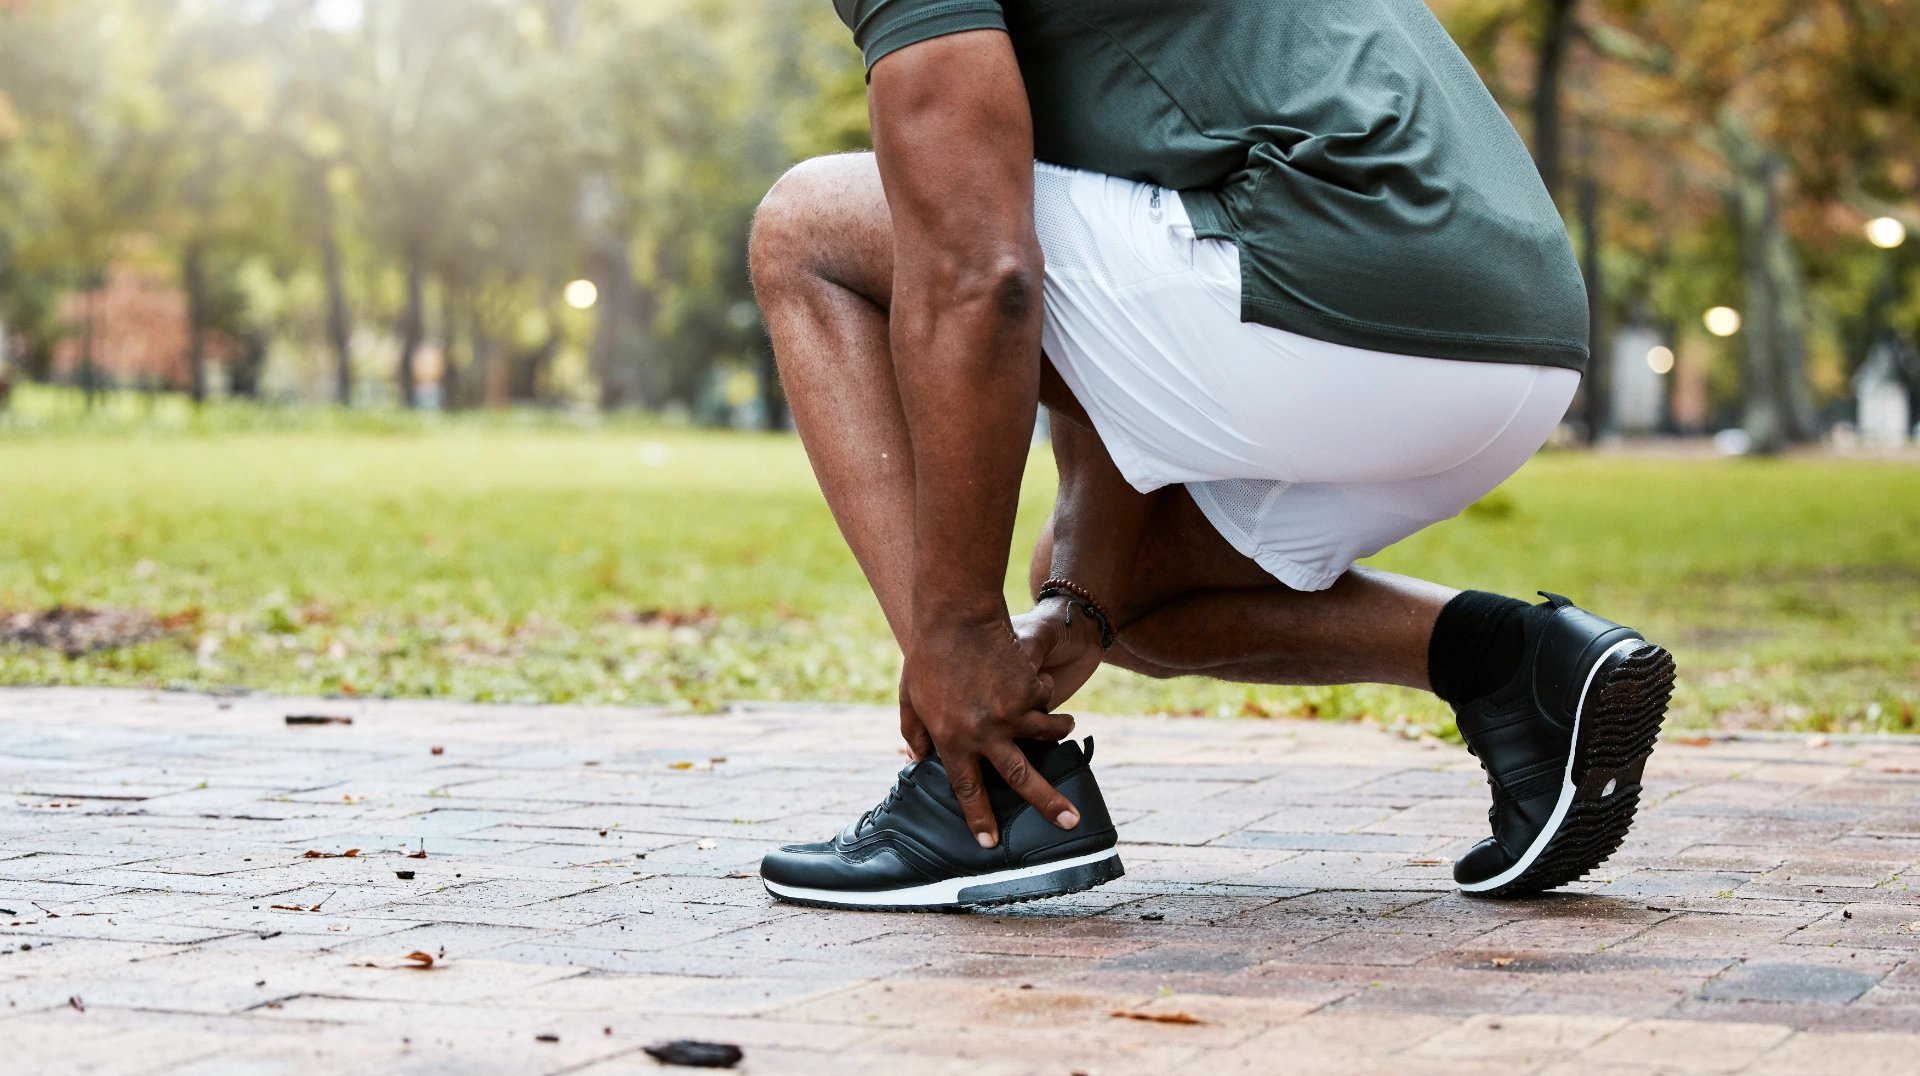 sports fitness runner or ankle pain on black man 2022 12 23 00 58 12 utc